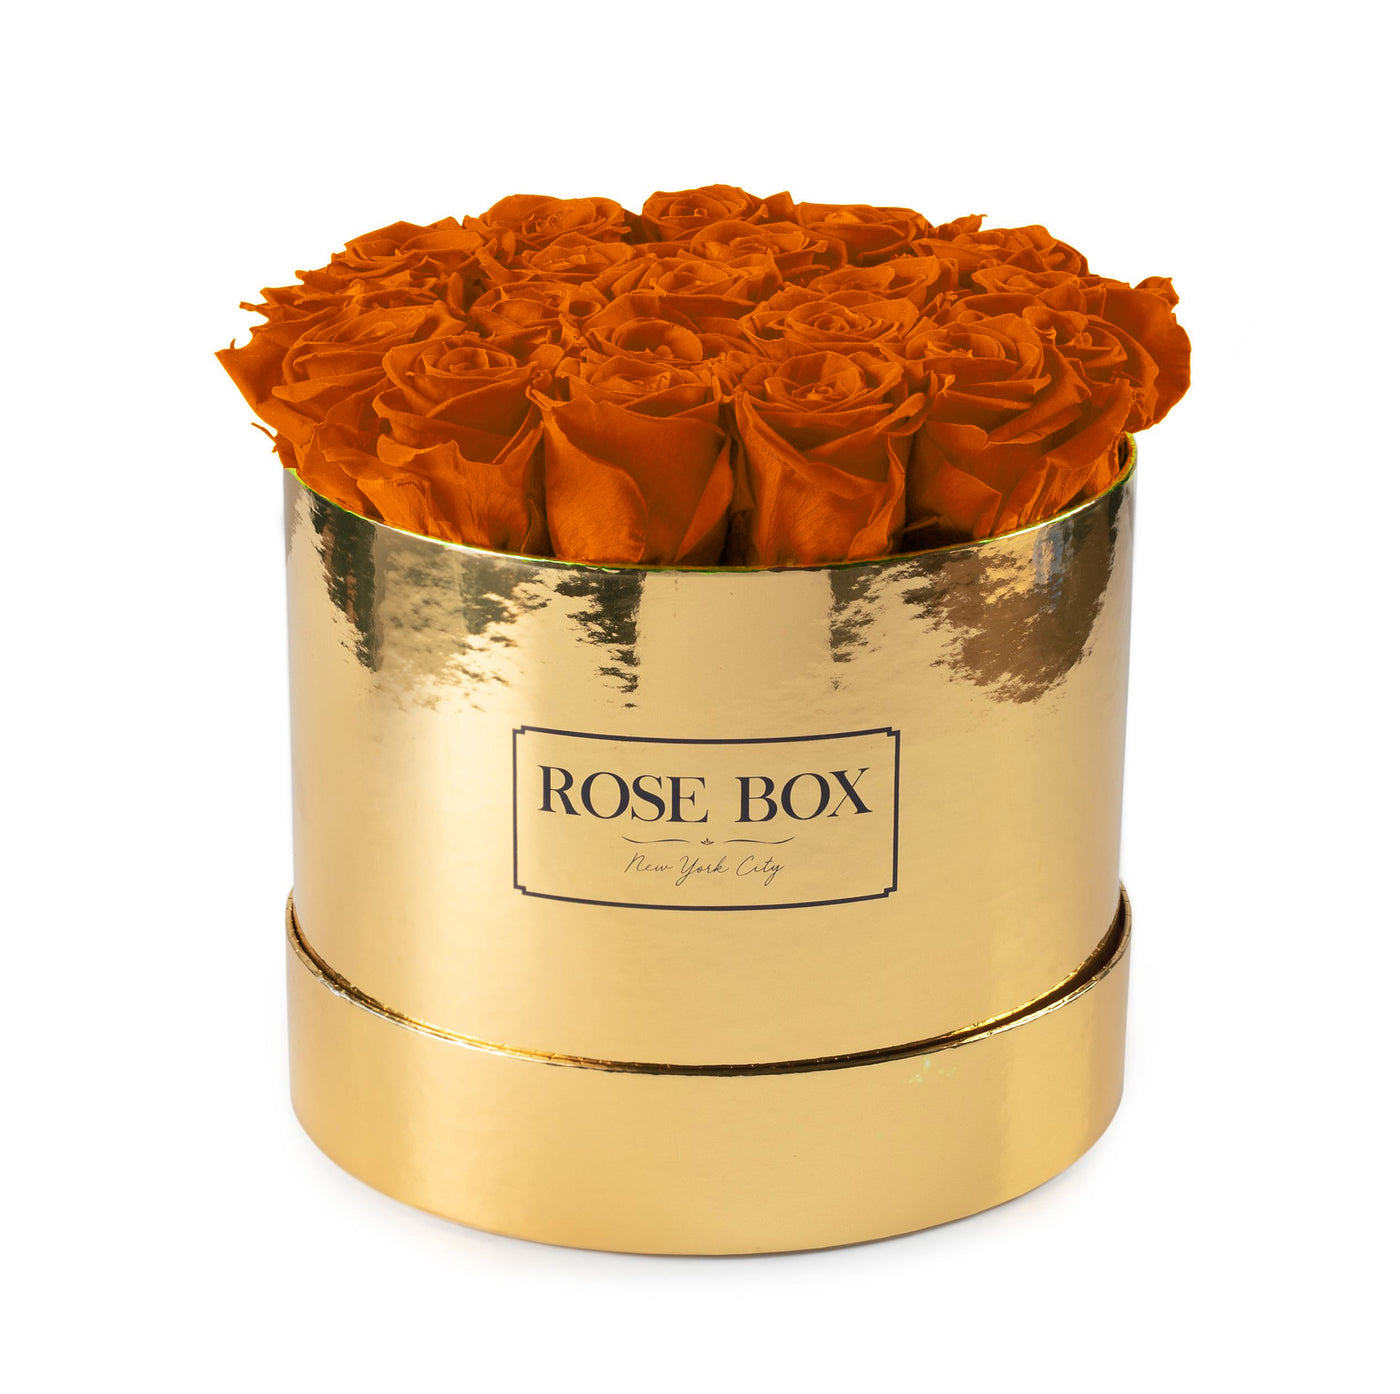 Medium Gold Box with Autumnal Orange Roses